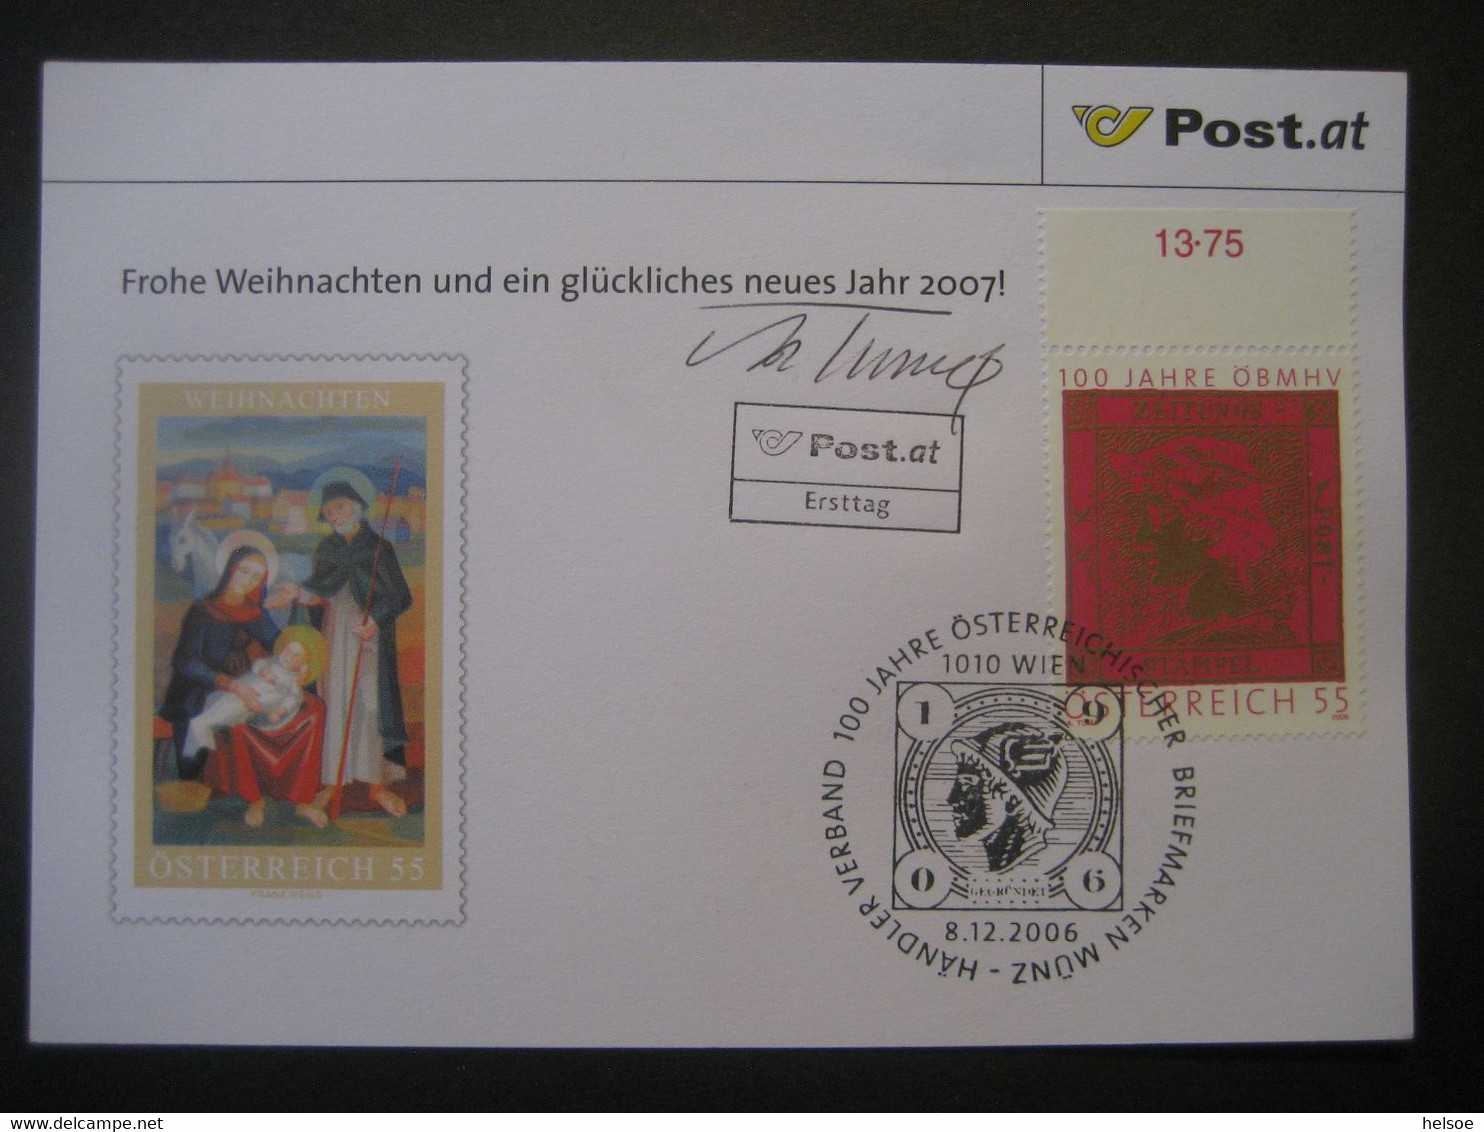 Osterreich- Advent 100 Jahre ÖBMSV, FDC Mit Autogramm Von Adolf Tuma - Covers & Documents